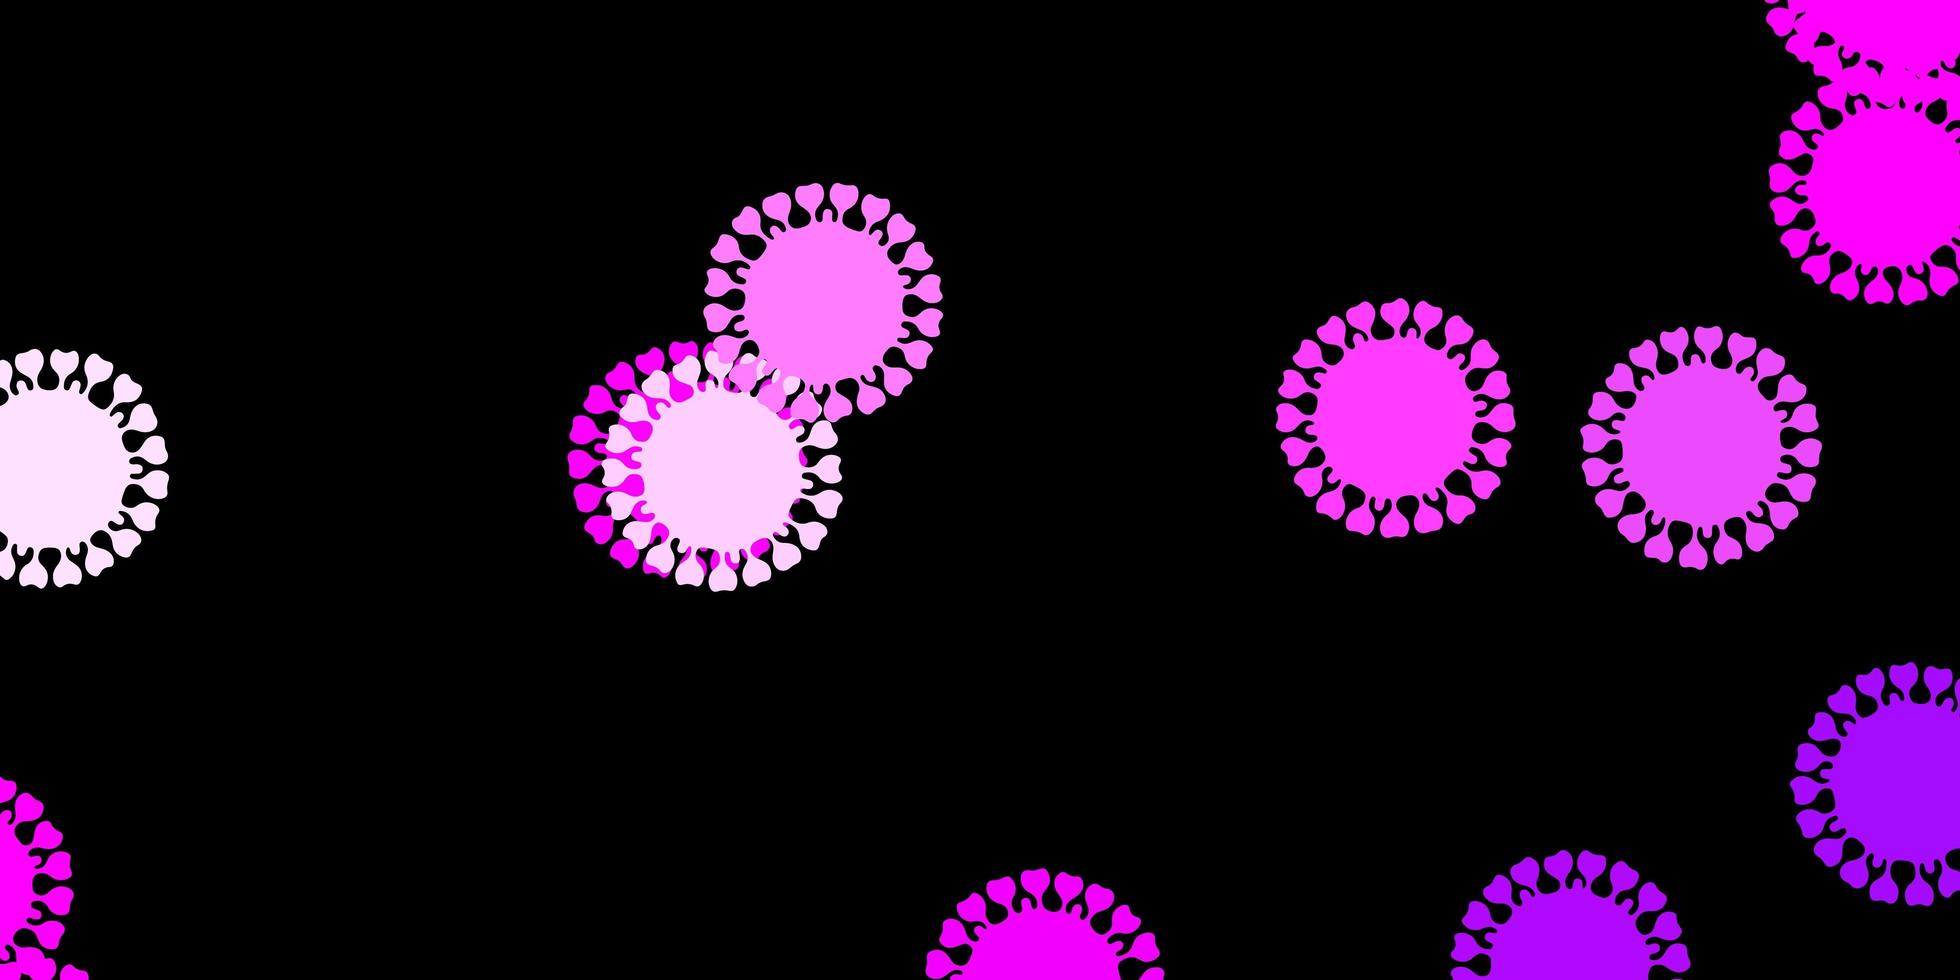 mörk lila, rosa vektor bakgrund med covid-19 symboler